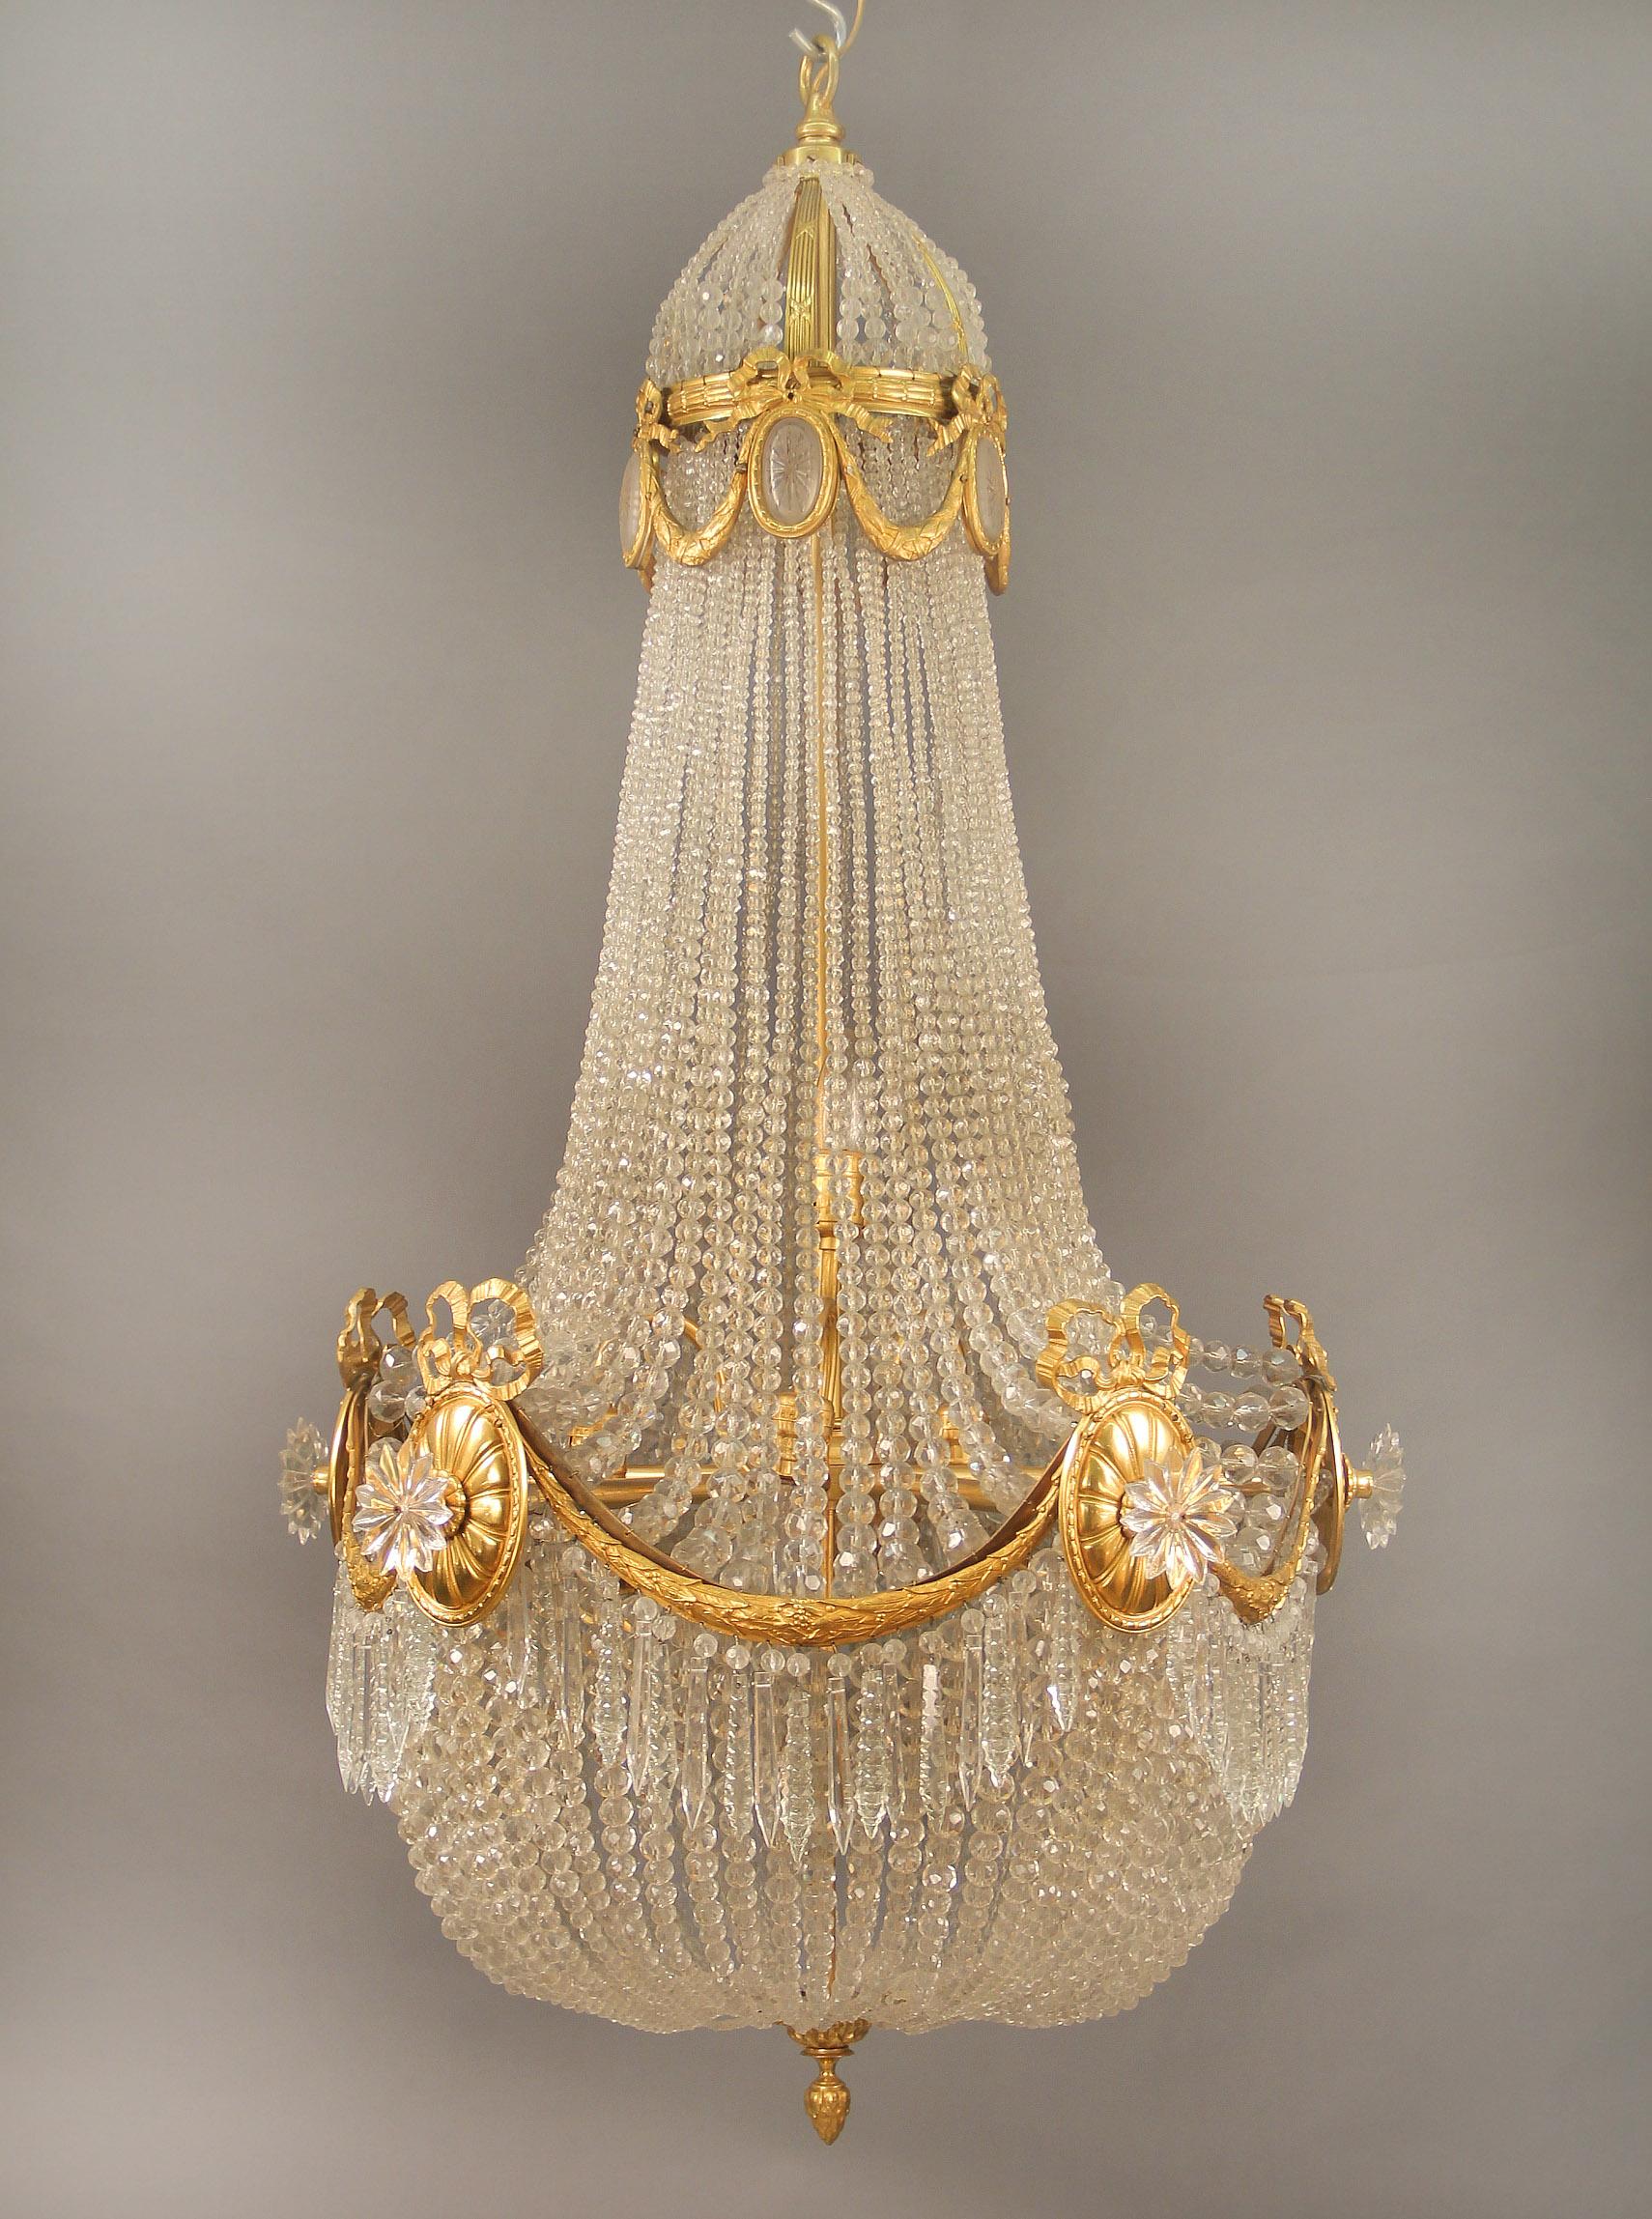 Excellent lustre à cinq lumières en bronze doré et panier perlé de la fin du 19e siècle / début du 20e siècle

La couronne de perles fines est composée de guirlandes et de nœuds en bronze centrés sur des médaillons en cristal dépoli gravé, les